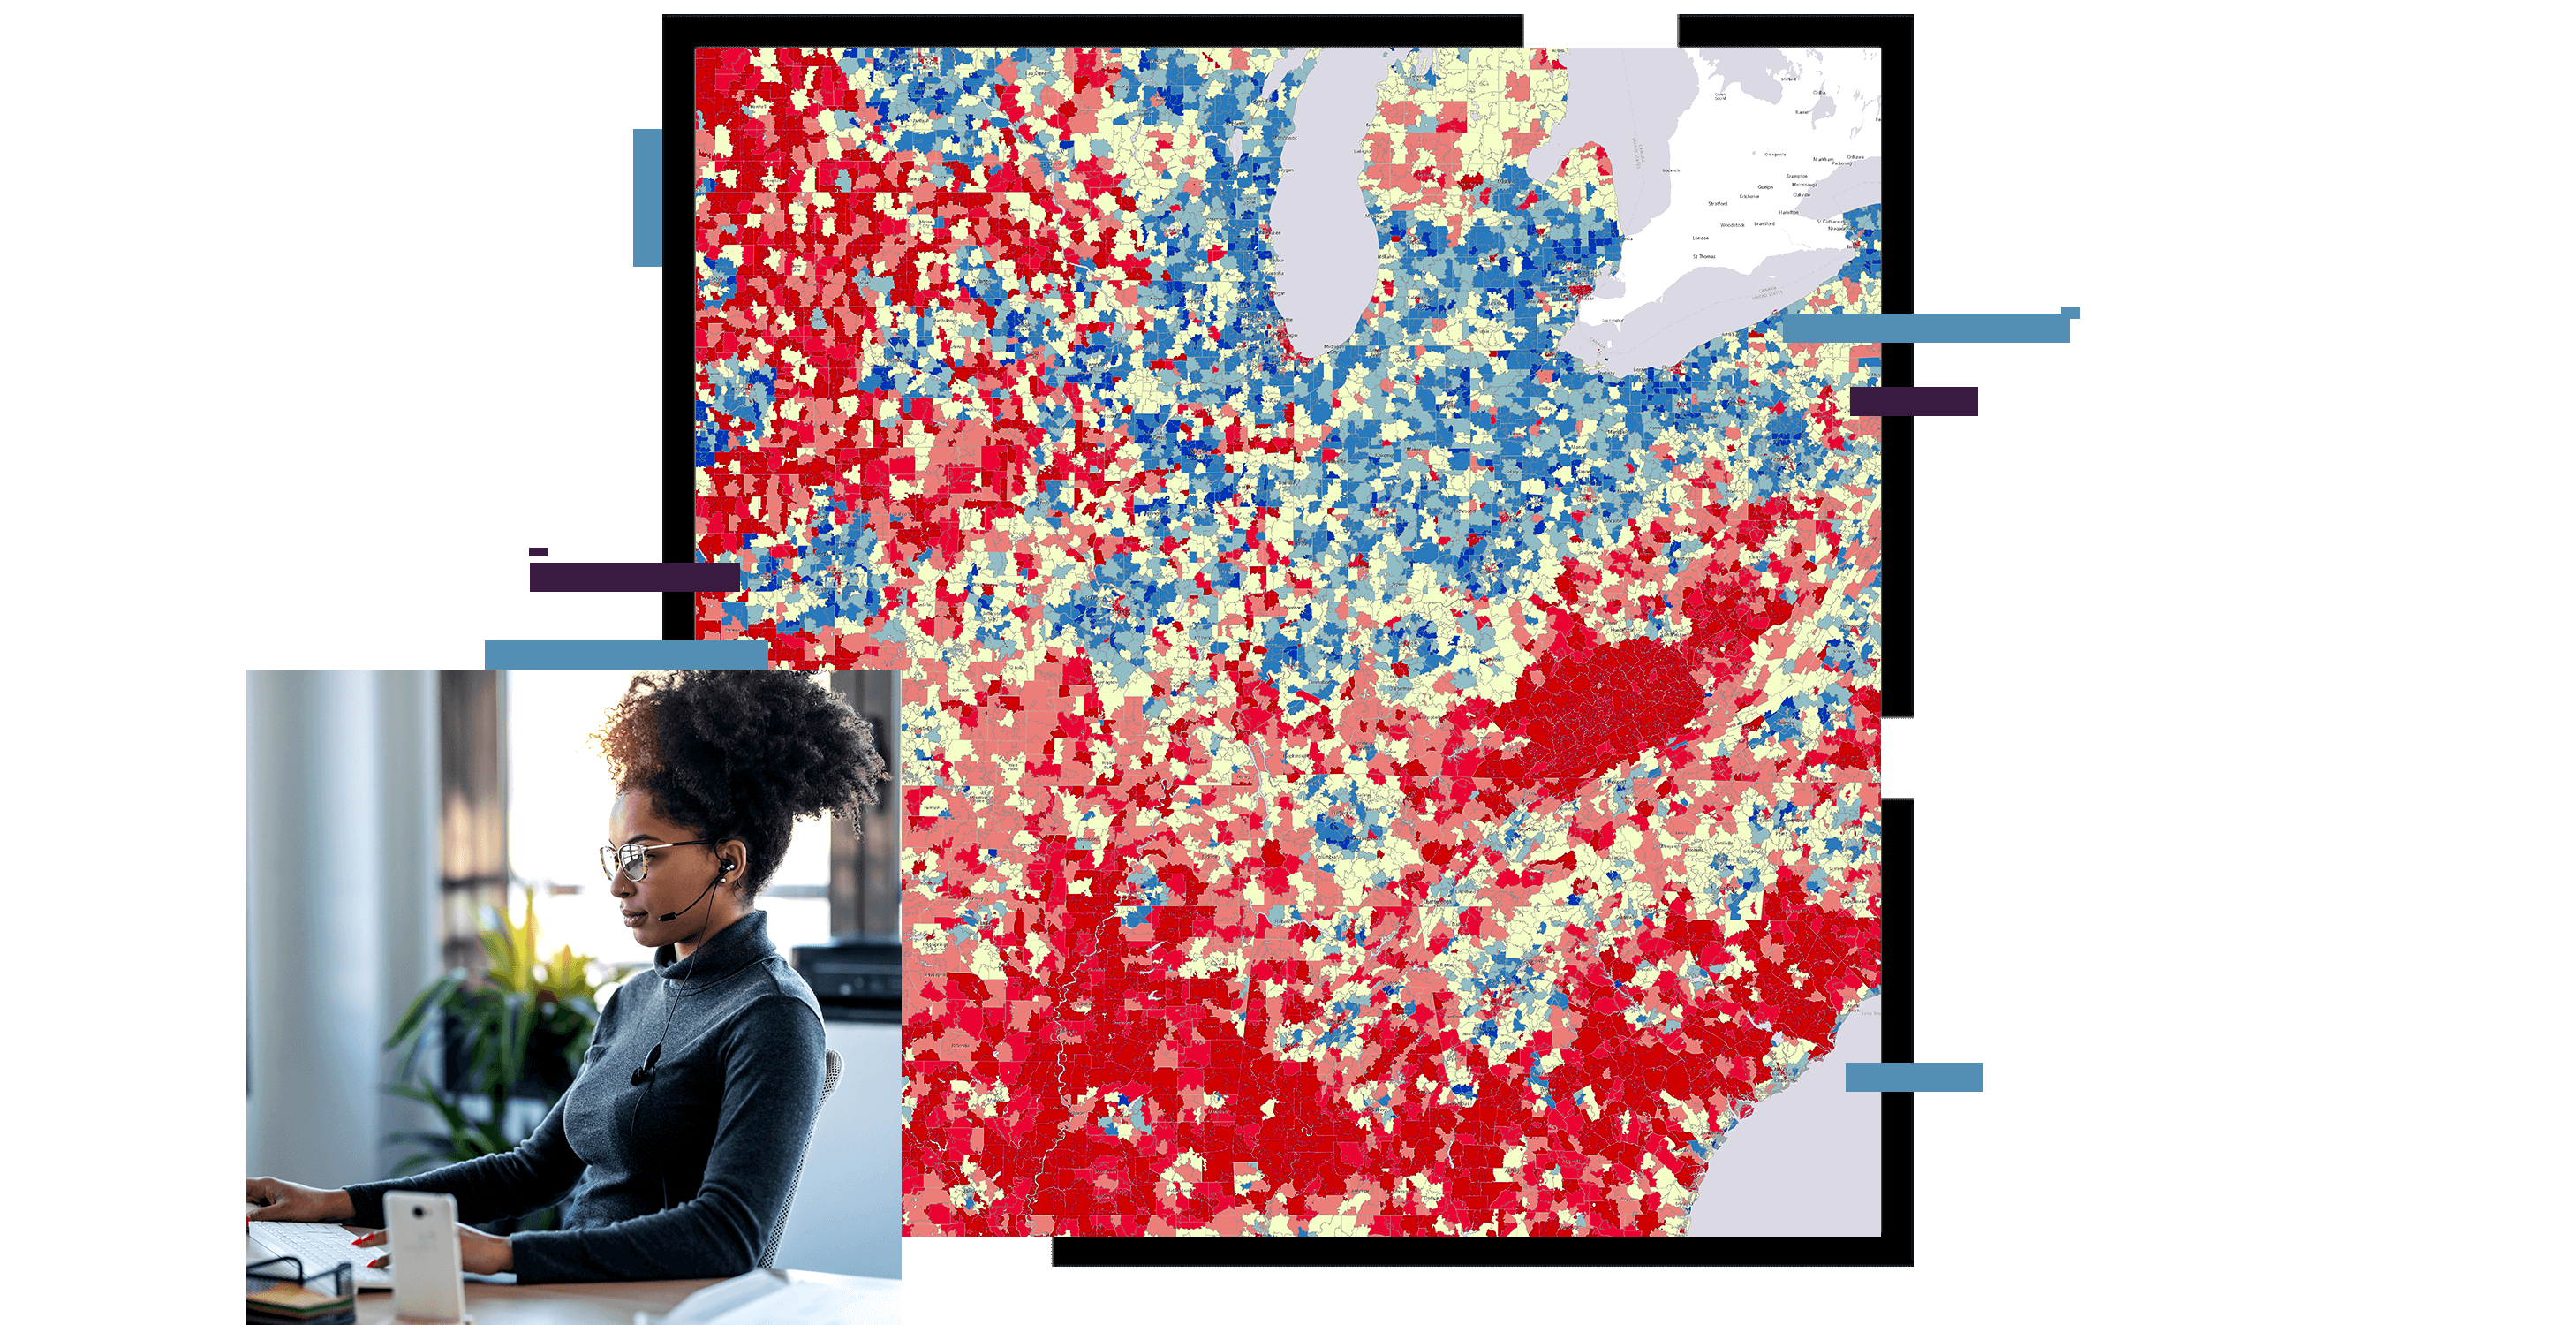 青色と赤色の密度マップの上に重ねて、ホーム オフィスでヘッドセットとラップトップを使用している人物の写真が表示されている 